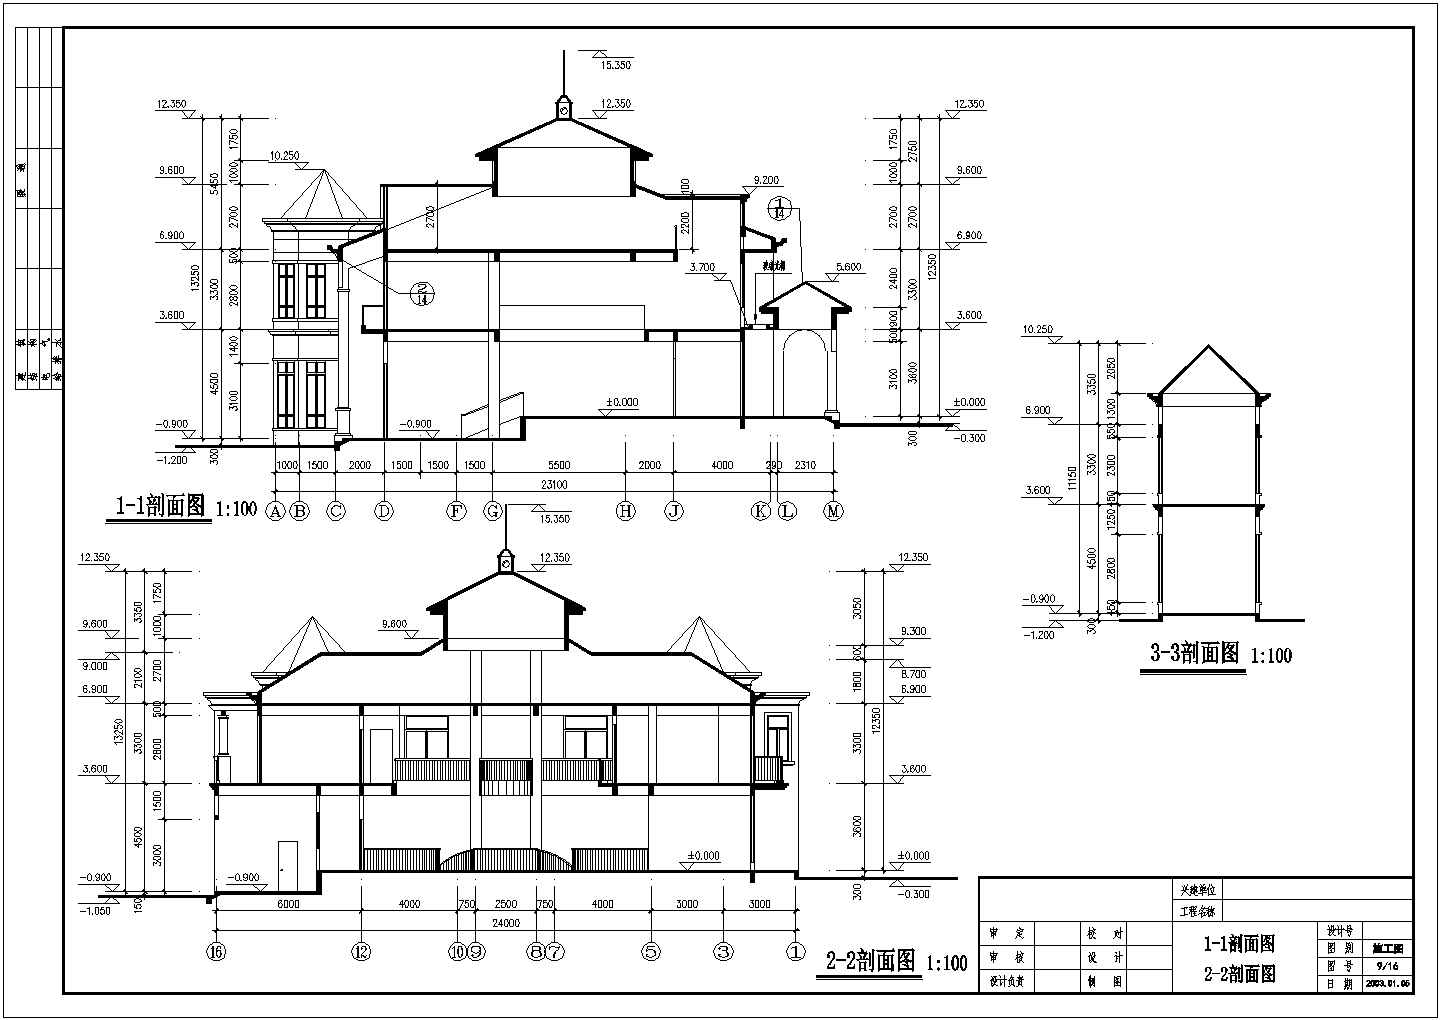 宫殿式带夹层豪华二层半别墅详细建筑设计图